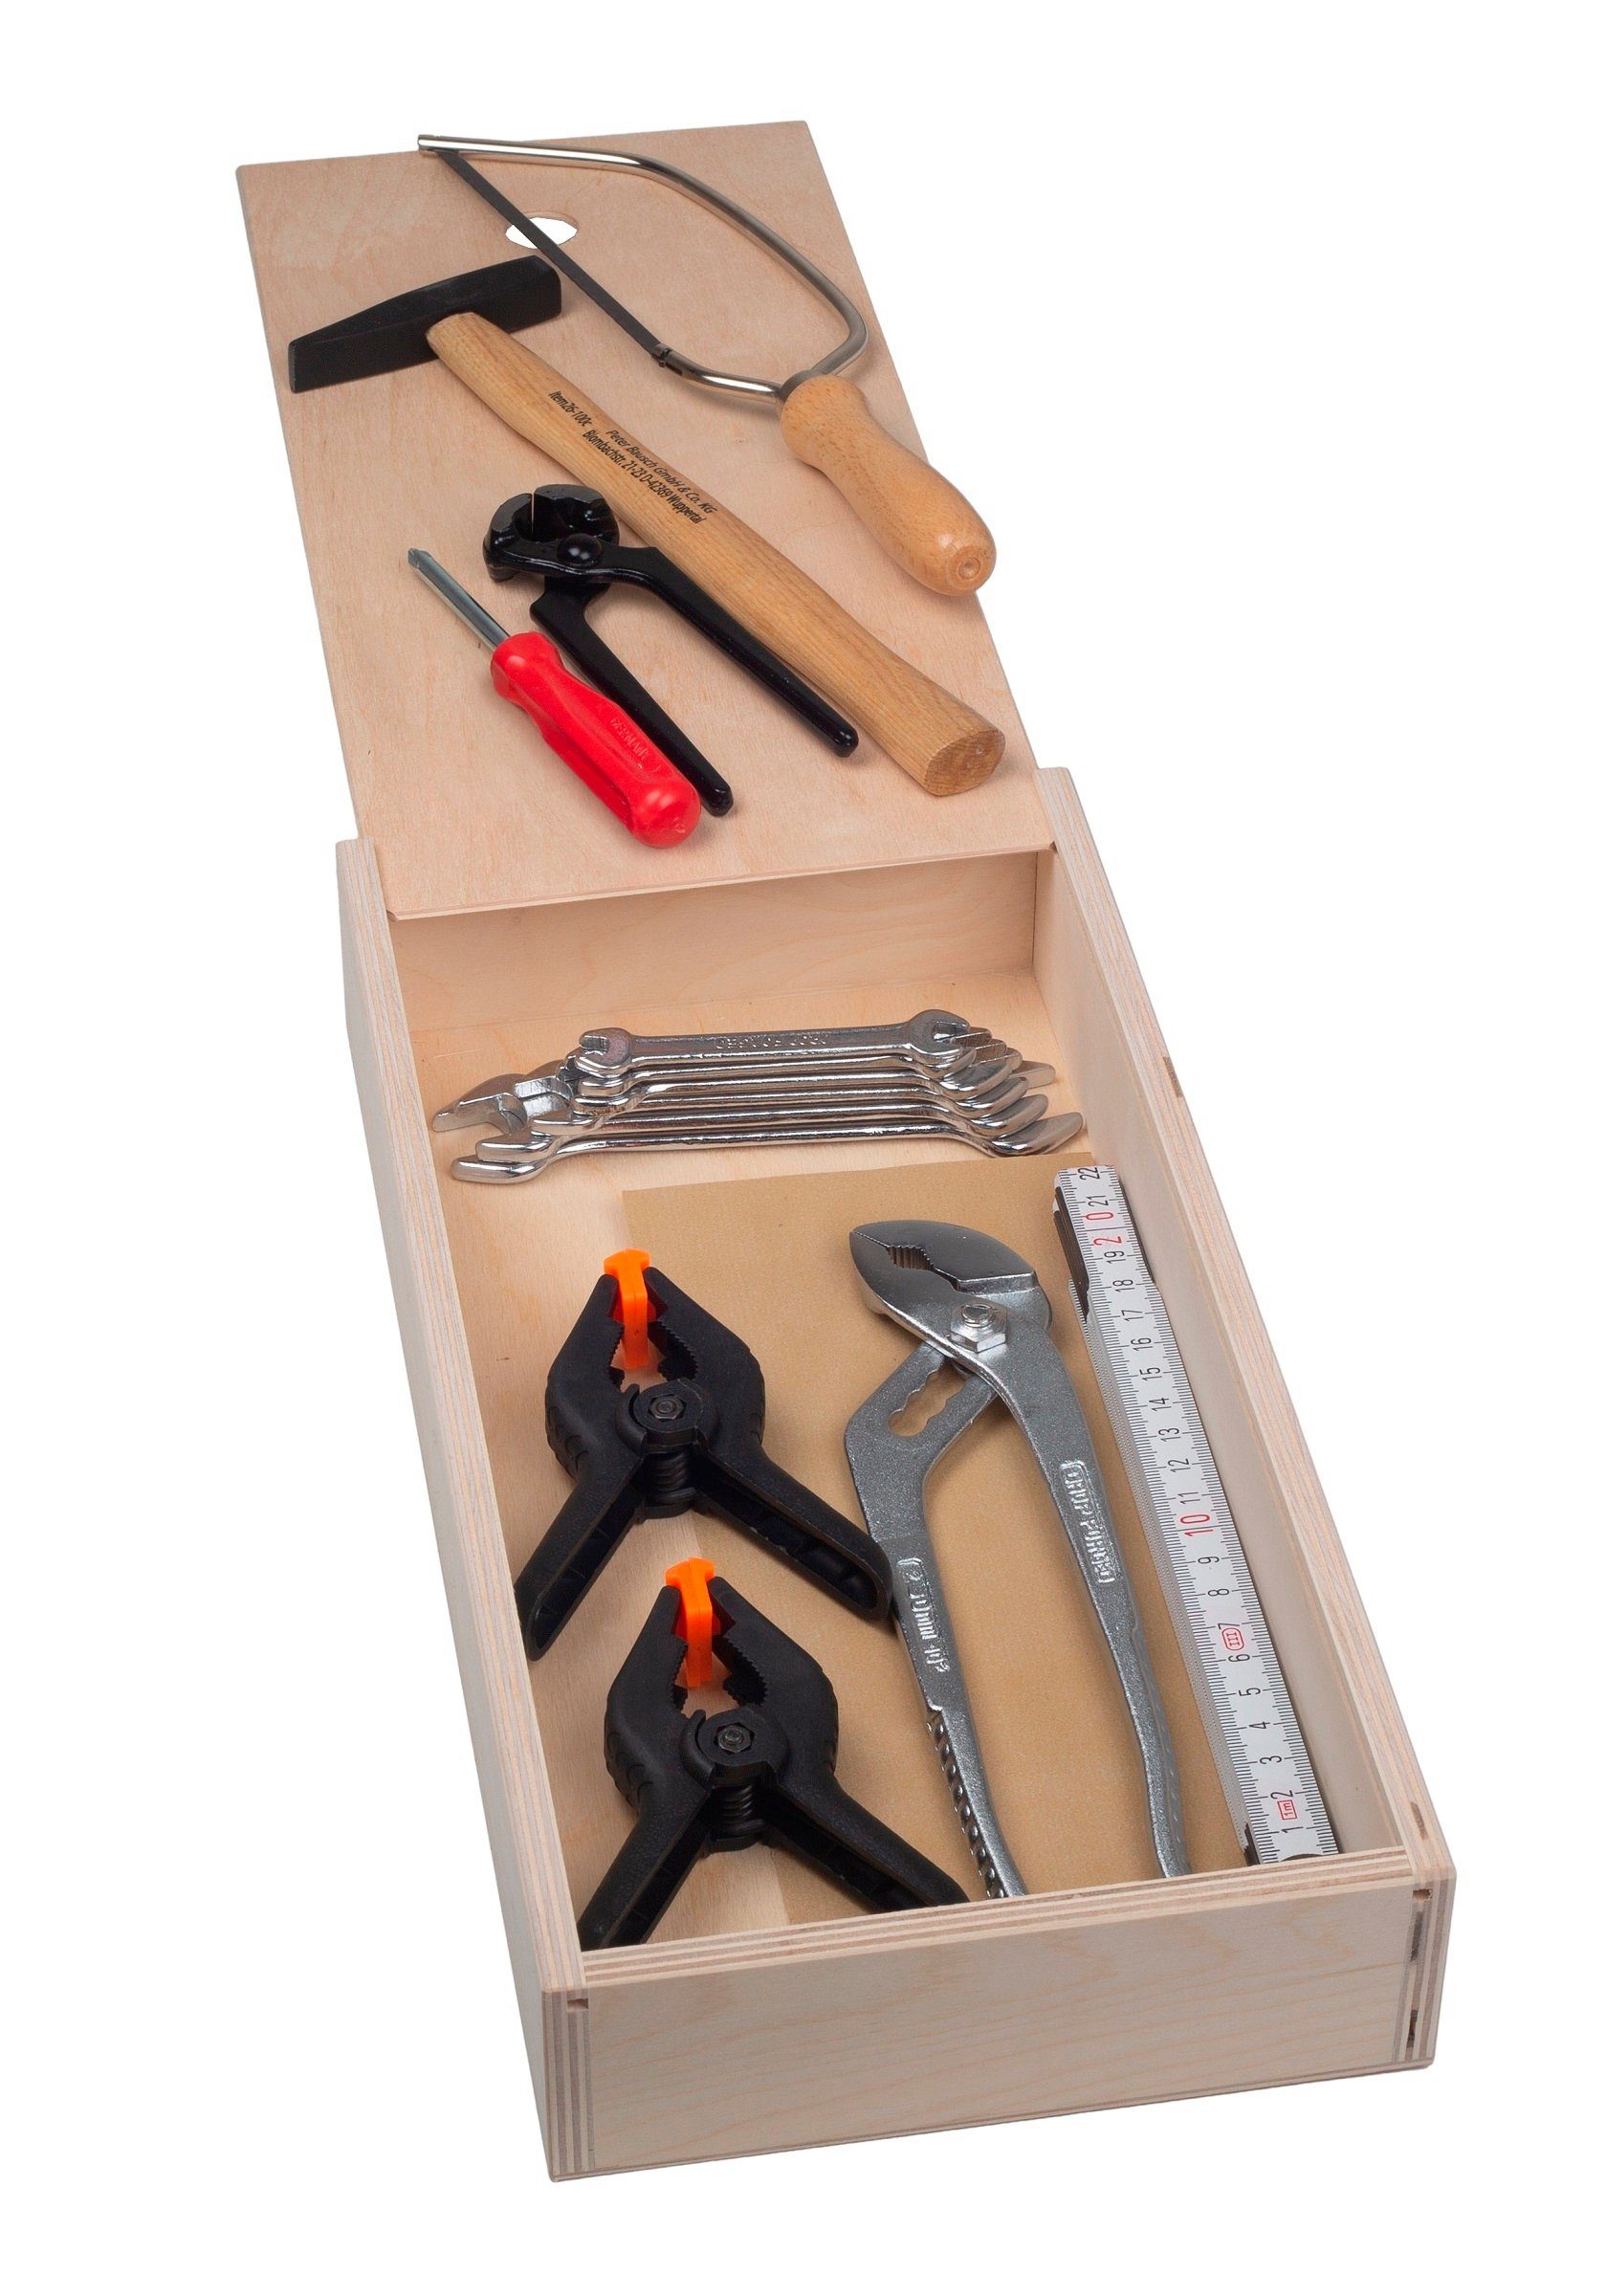 Pebaro Kinder-Werkzeug-Set Qualitäts-Werkzeugbox, 16 Teile, 460